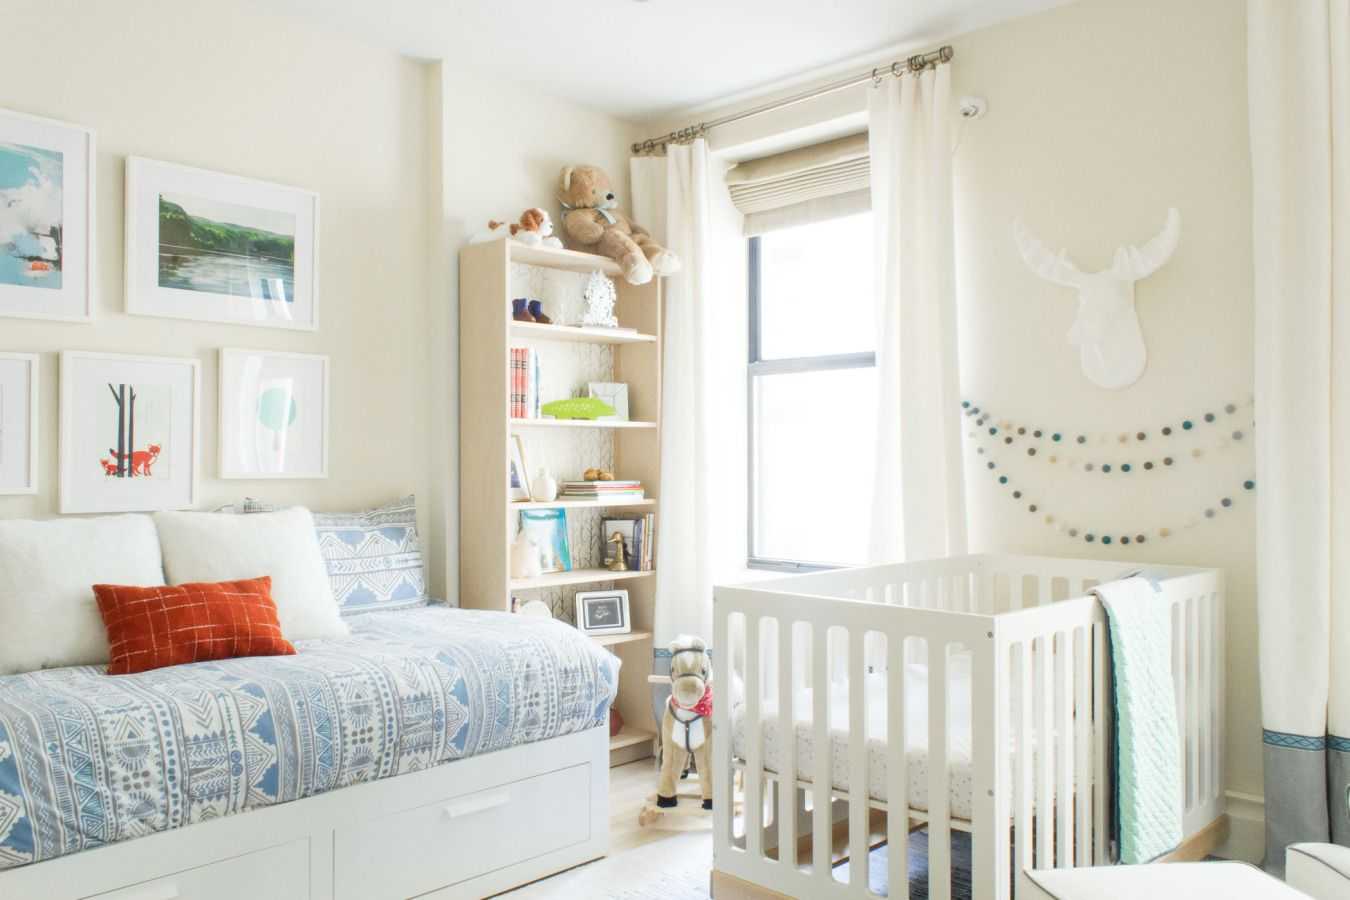 Чтобы маме и ребенку было комфортно комната для новорожденного должна быть оформлена правильно Какая нужна мебель какие цвета что куда поставить - читайте тут